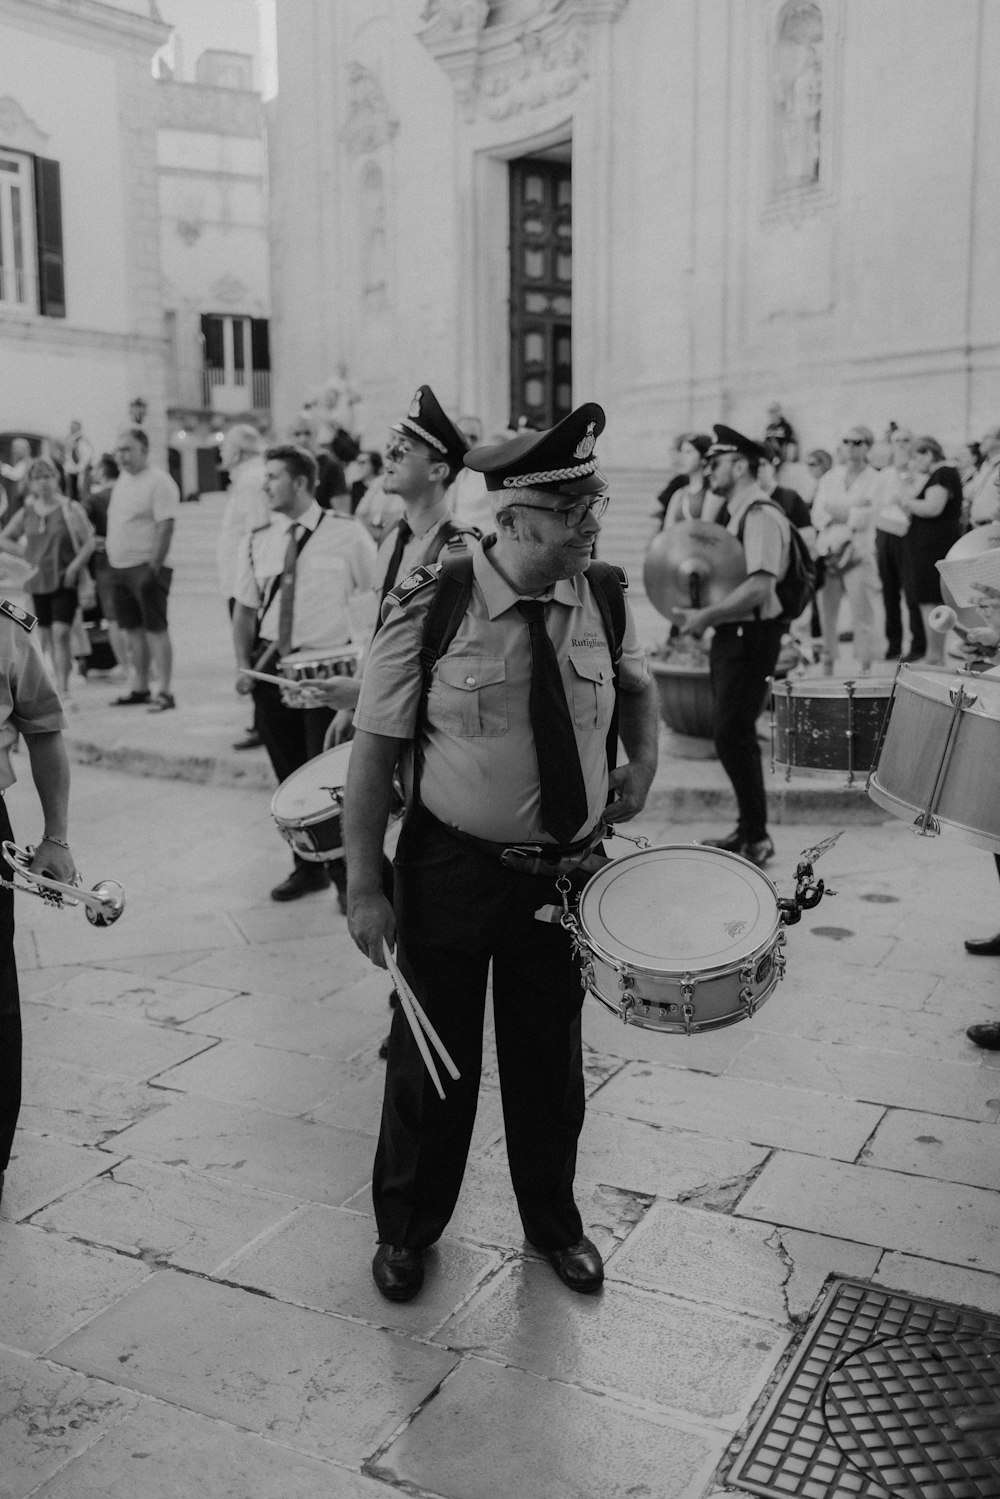 ドラムを演奏する制服を着た男性のグループ